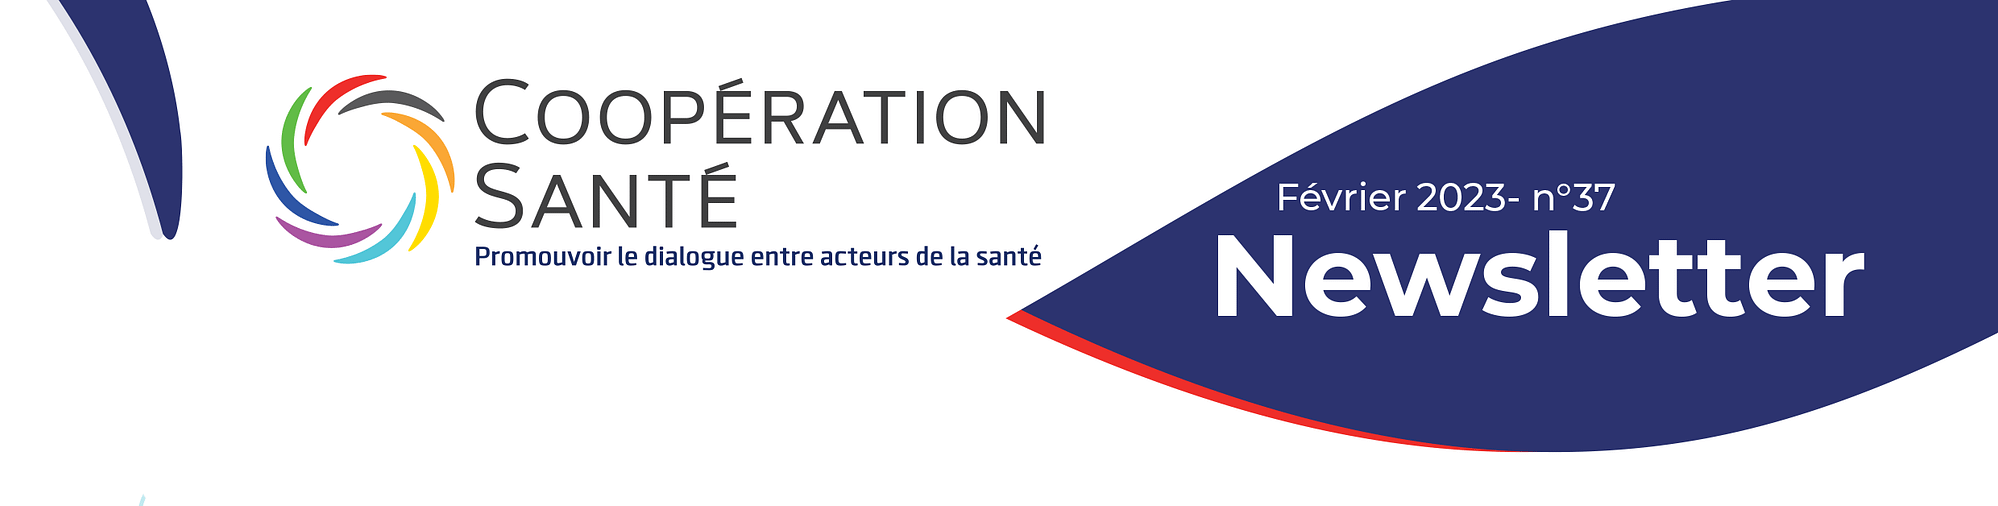 Newsletter-Coopération-Santé-Février-2023